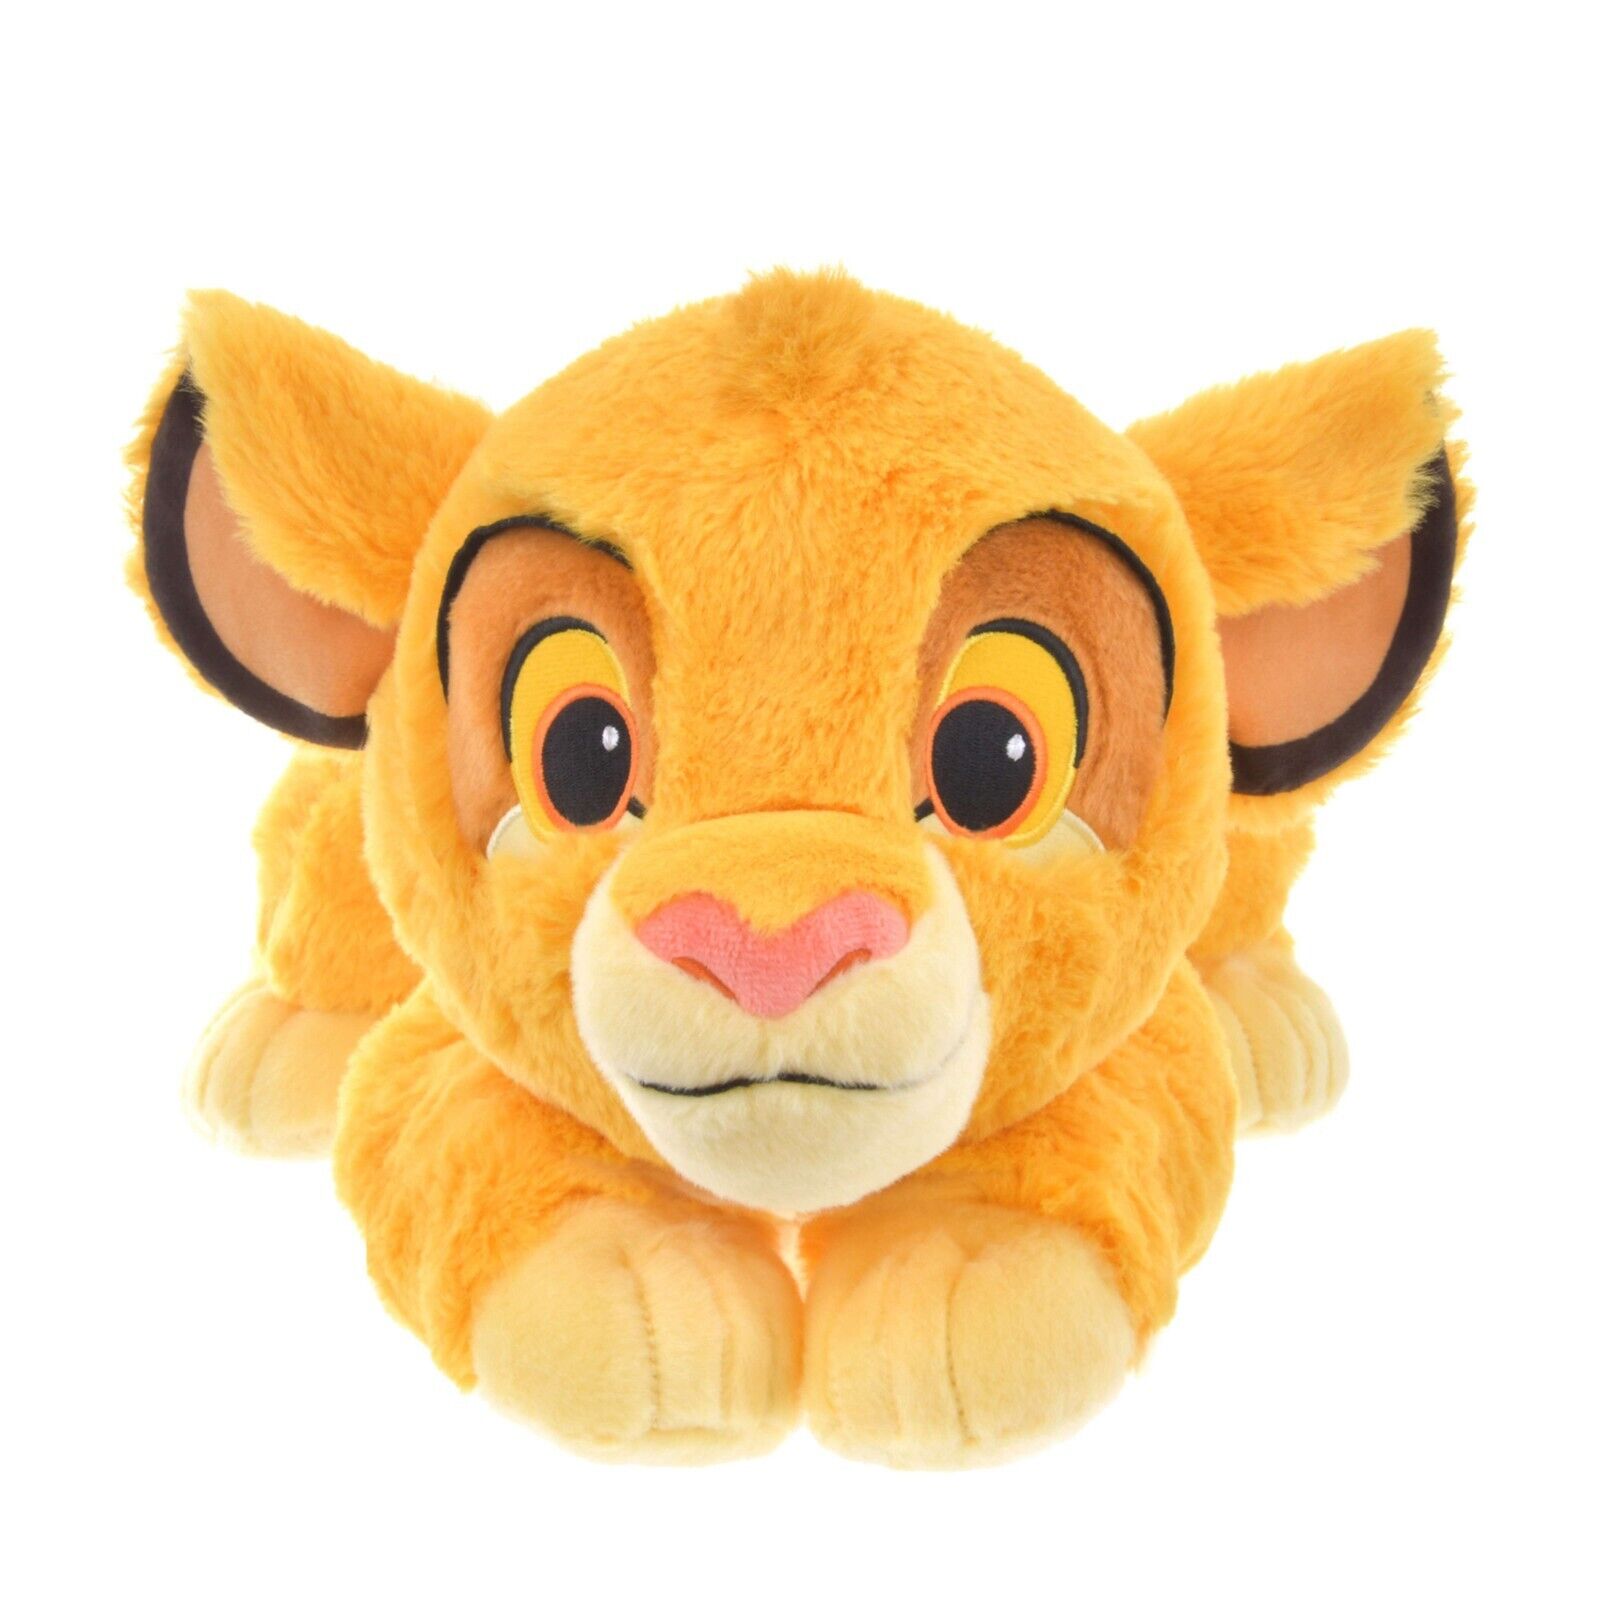 Japan Tokyo Disney Store Simba Plush Toy THE LION KING 30 YEARS